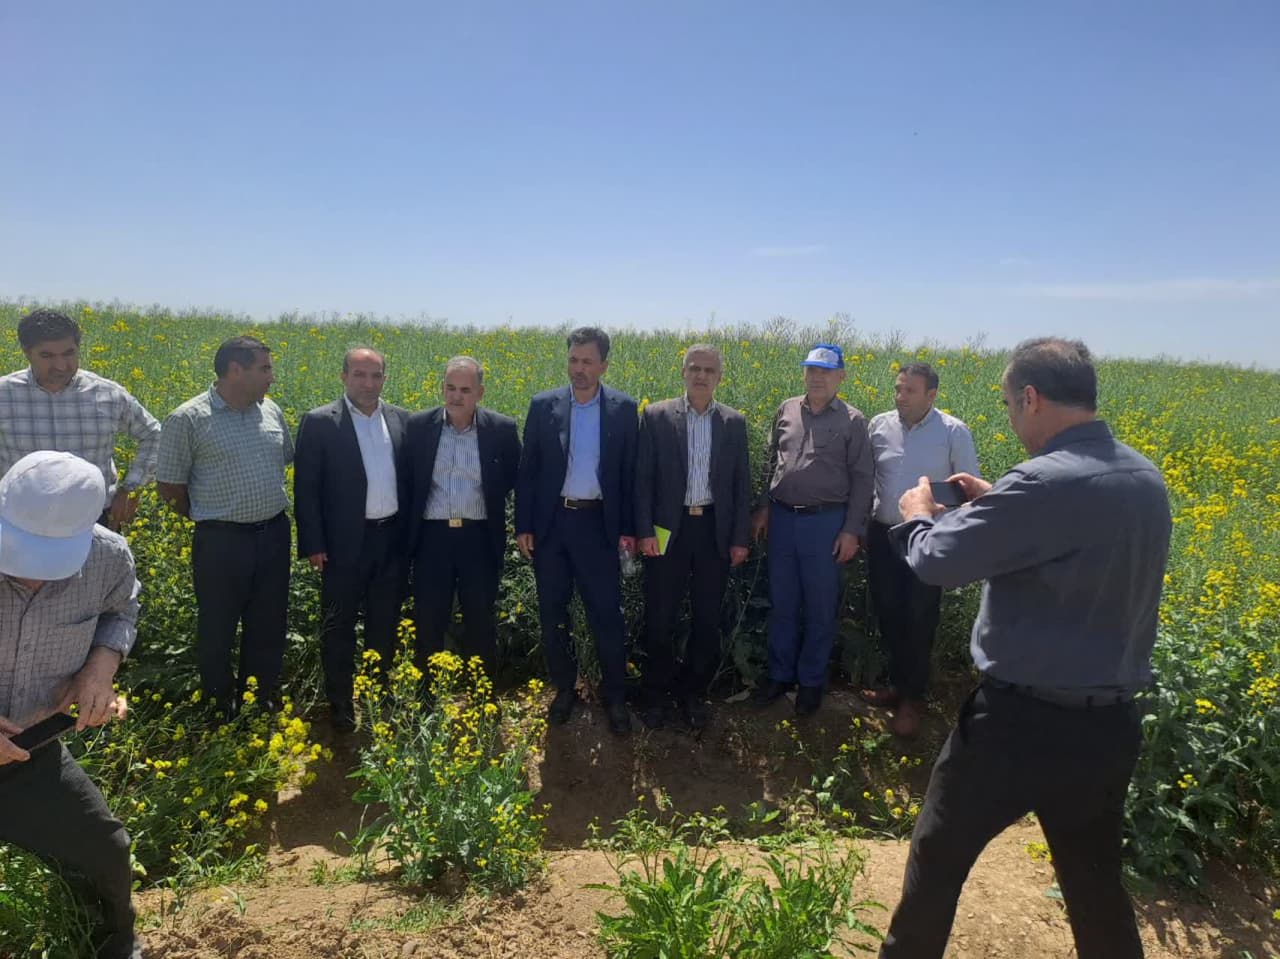 بازدید مدیرکل دفتر طرح دانه های روغنی وزارتخانه جهاد کشاورزی از مزارع بذری کلزا کشت و صنعت مغان